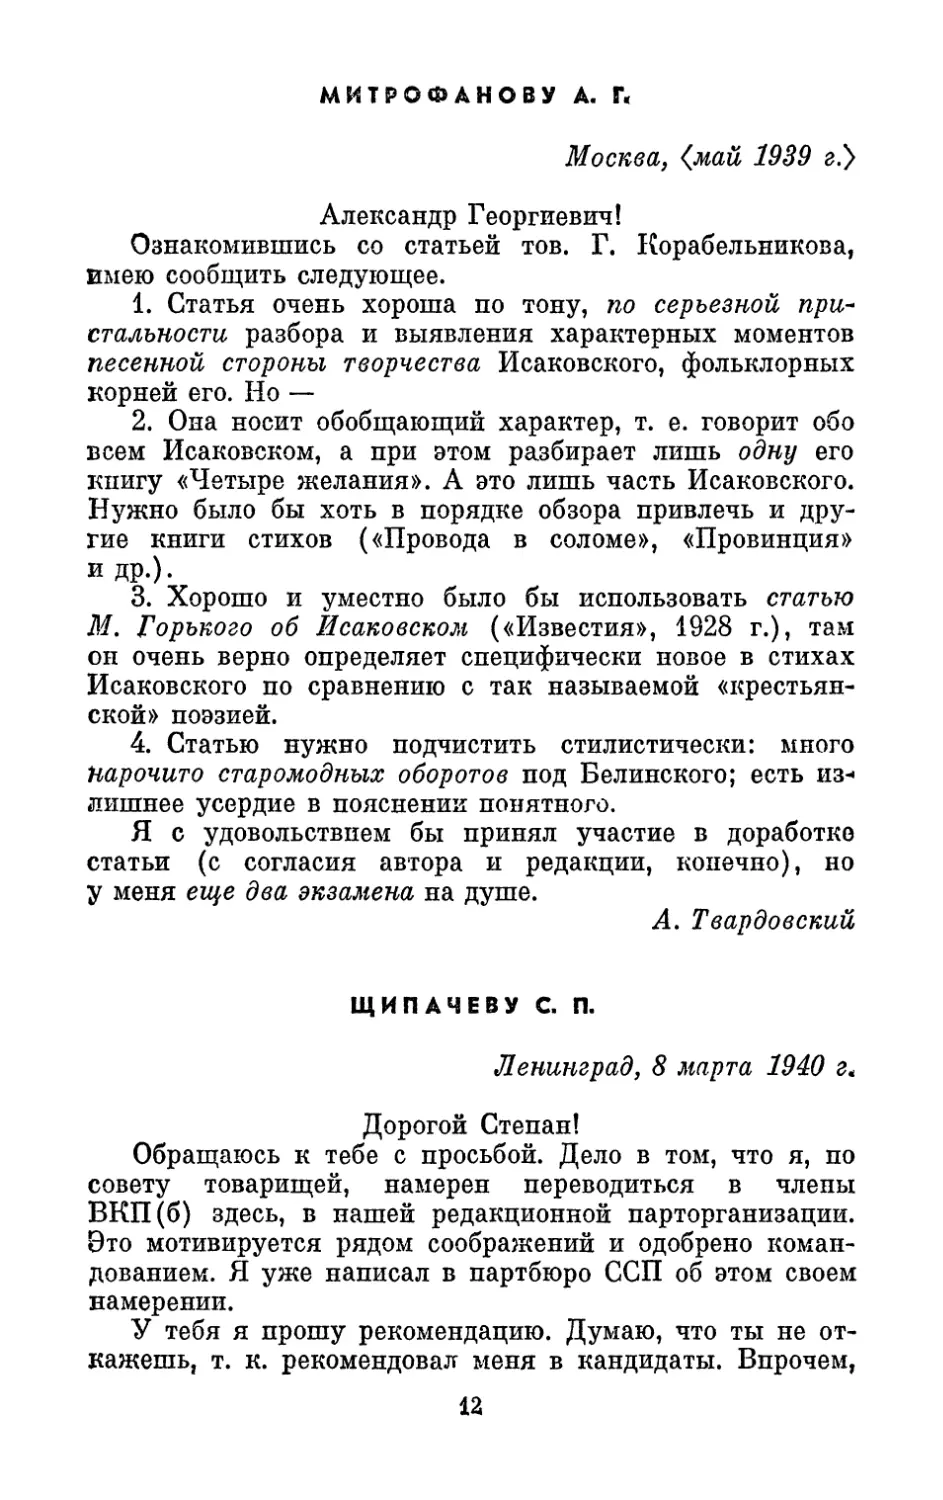 Митрофанову А. Г., <май 1939 г.>
Щипачеву С. П., 8 марта 1940 г.